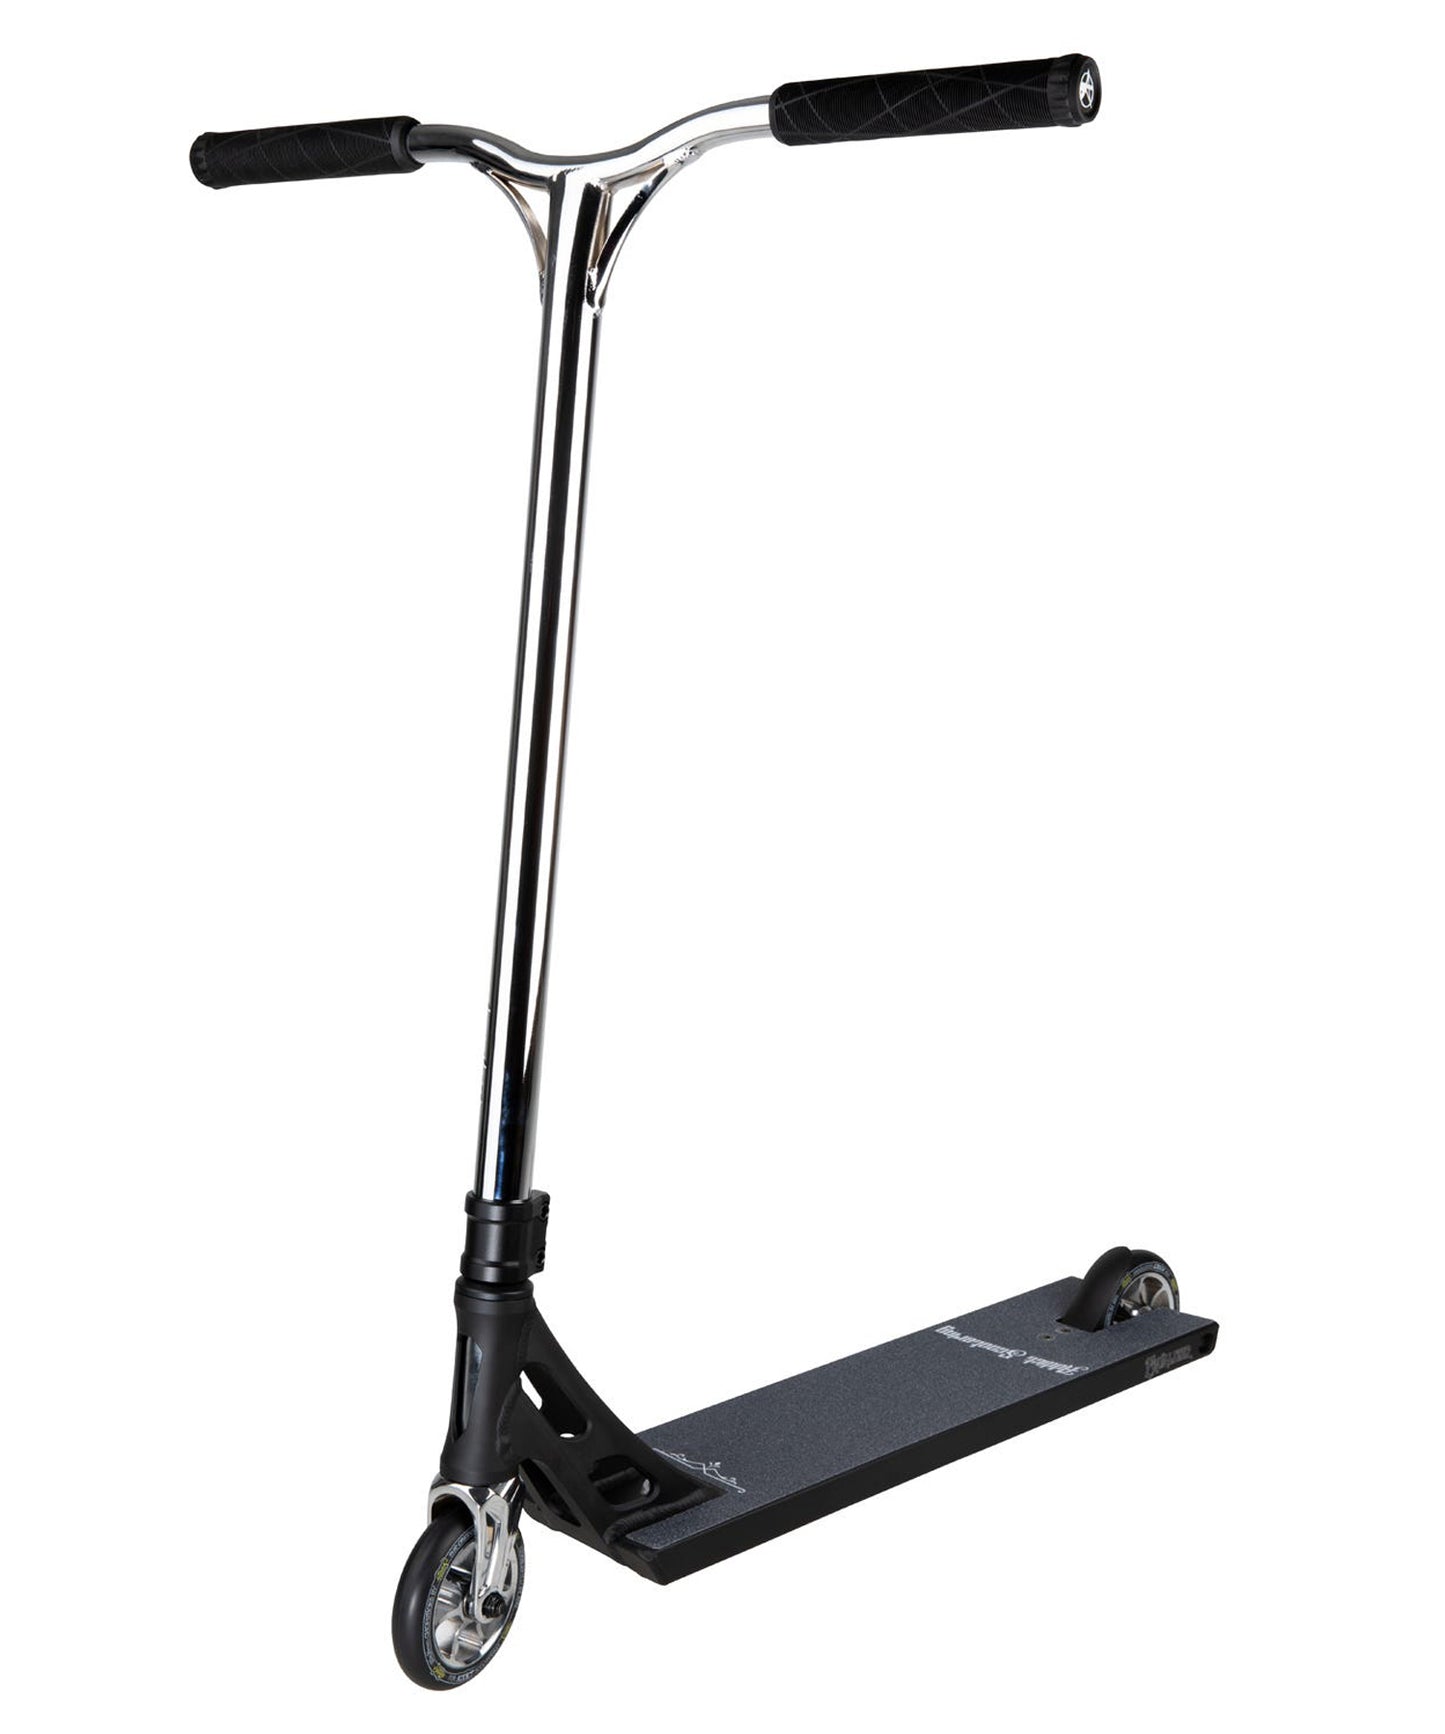 addict-scooter-completo-equalizer-20-color-negro-cromo-profesional-materiales de primera calidad-rígido y robusto.